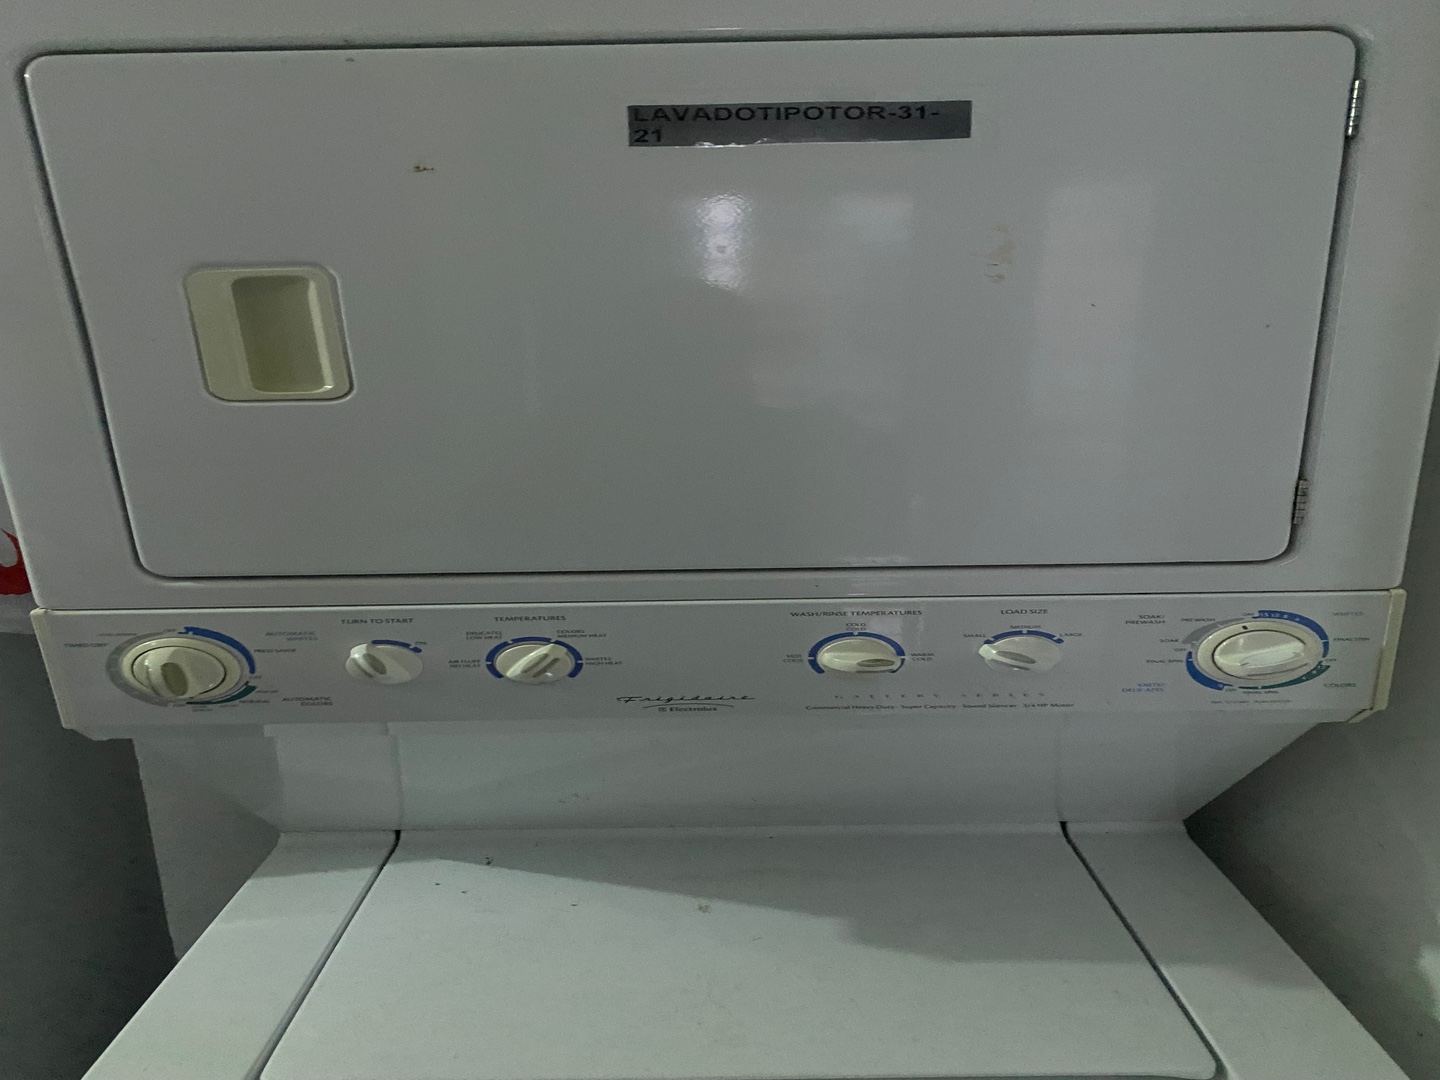 electrodomesticos - Lavadora tipo torre secadora de gas lavadora de corriente 110 2